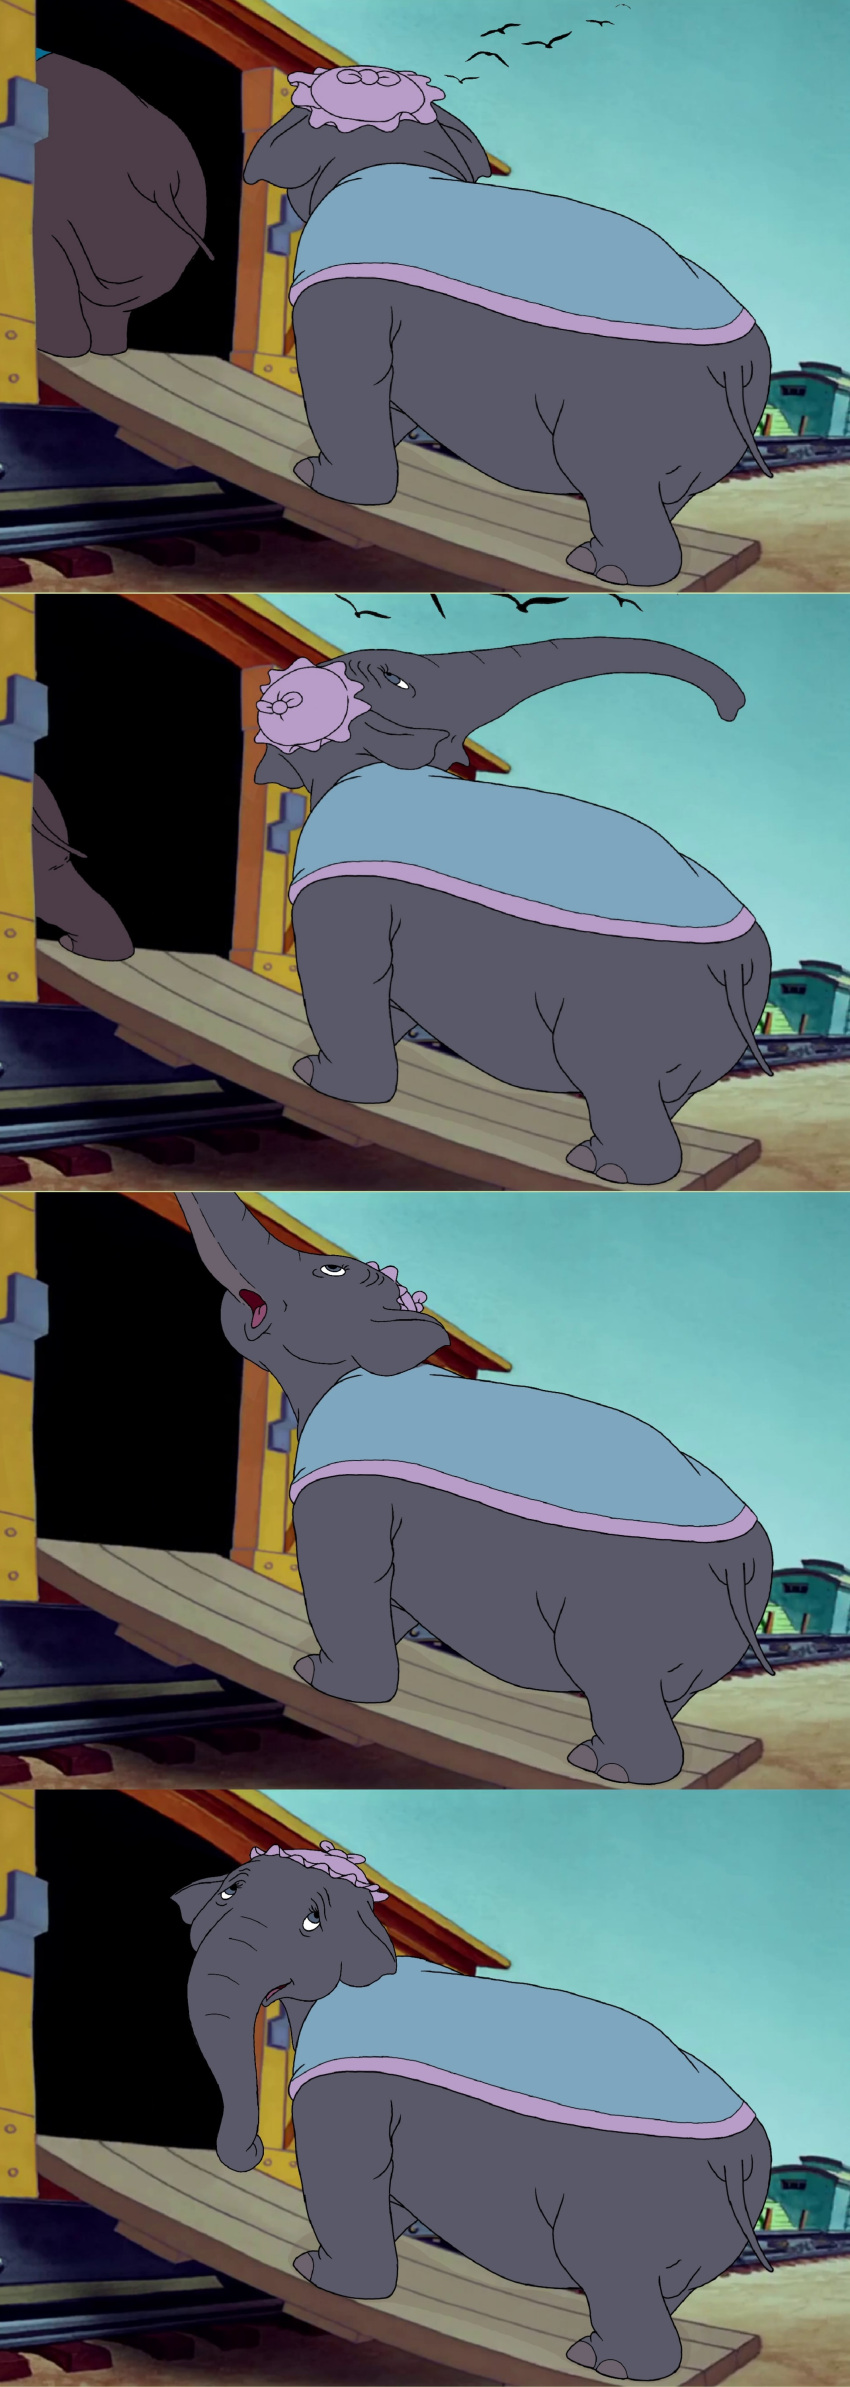 big_ass dumbo elephant giddy_(dumbo) mrs._jumbo_(dumbo) mrsjumbo pachyderm plump plump_ass train